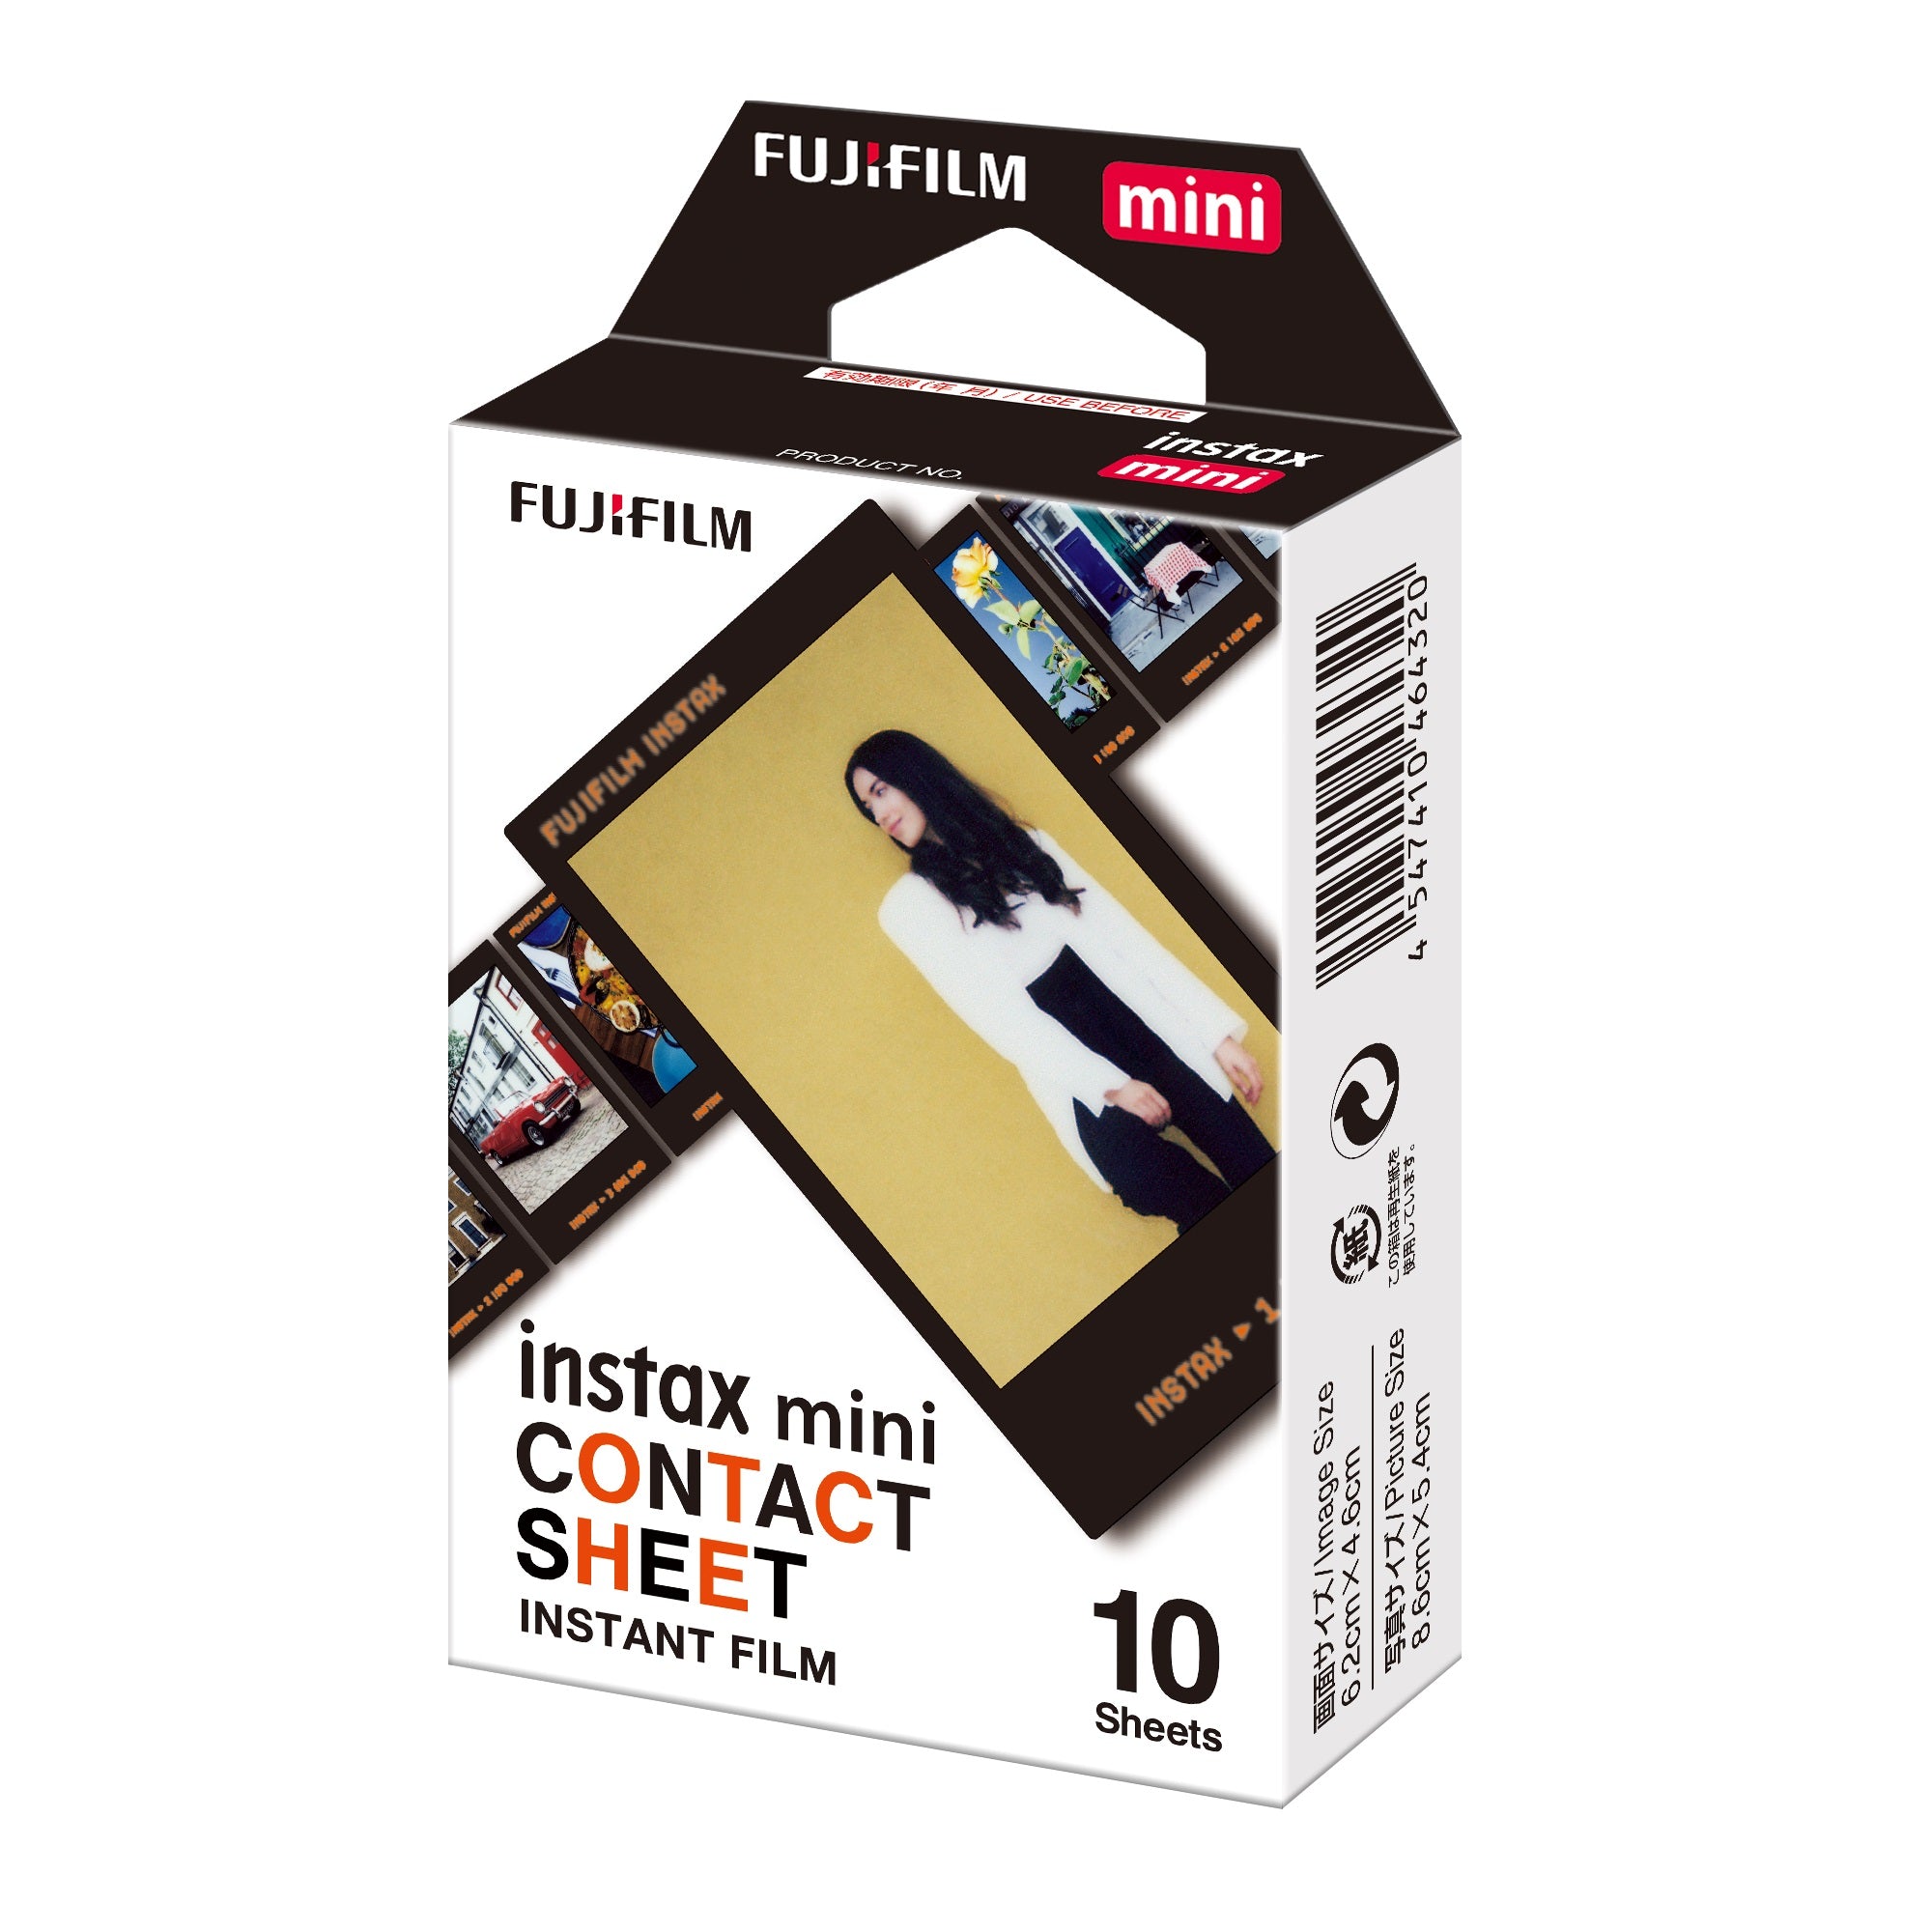 Fujifilm instax mini film contact sheet (10 sheets)